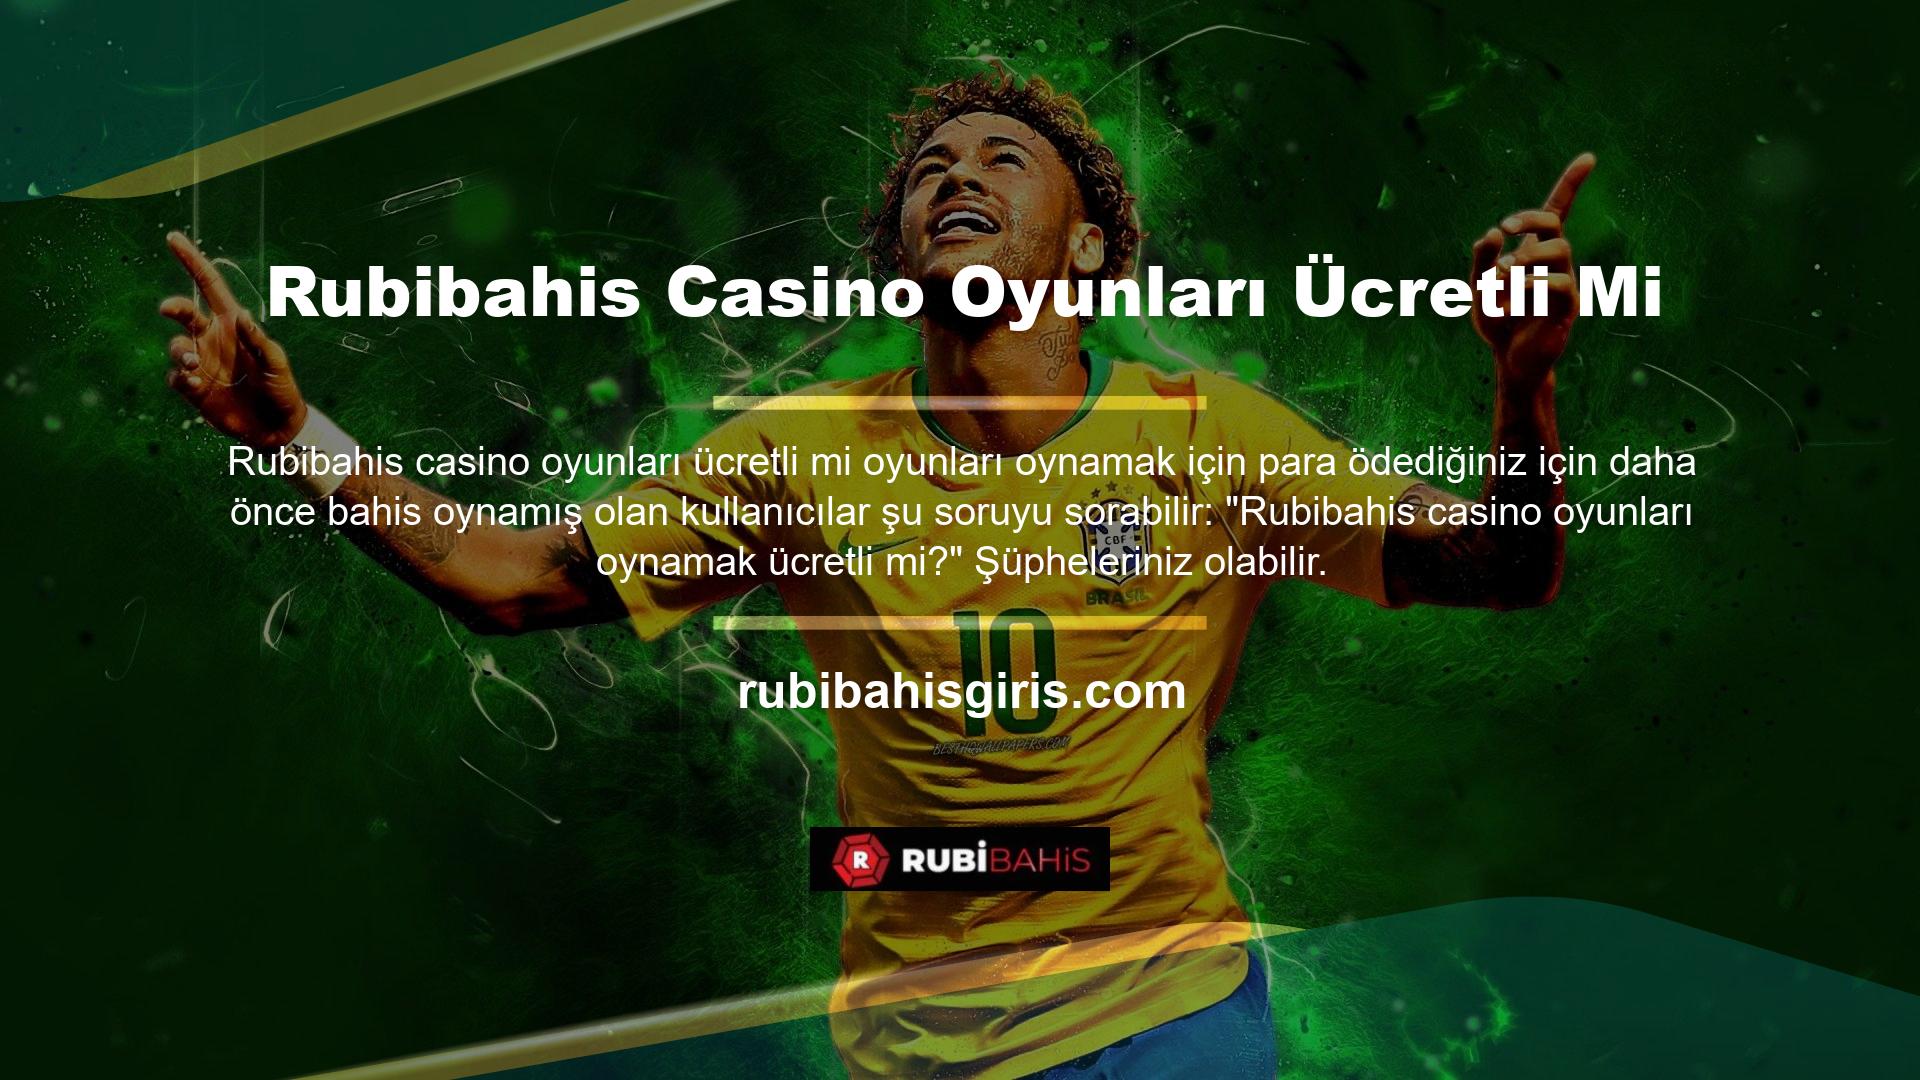 Rubibahis üyesi olarak bakiyenizi doldurduktan sonra Rubibahis bonusunuzu Rubibahis casino oyunlarında da kullanabilirsiniz